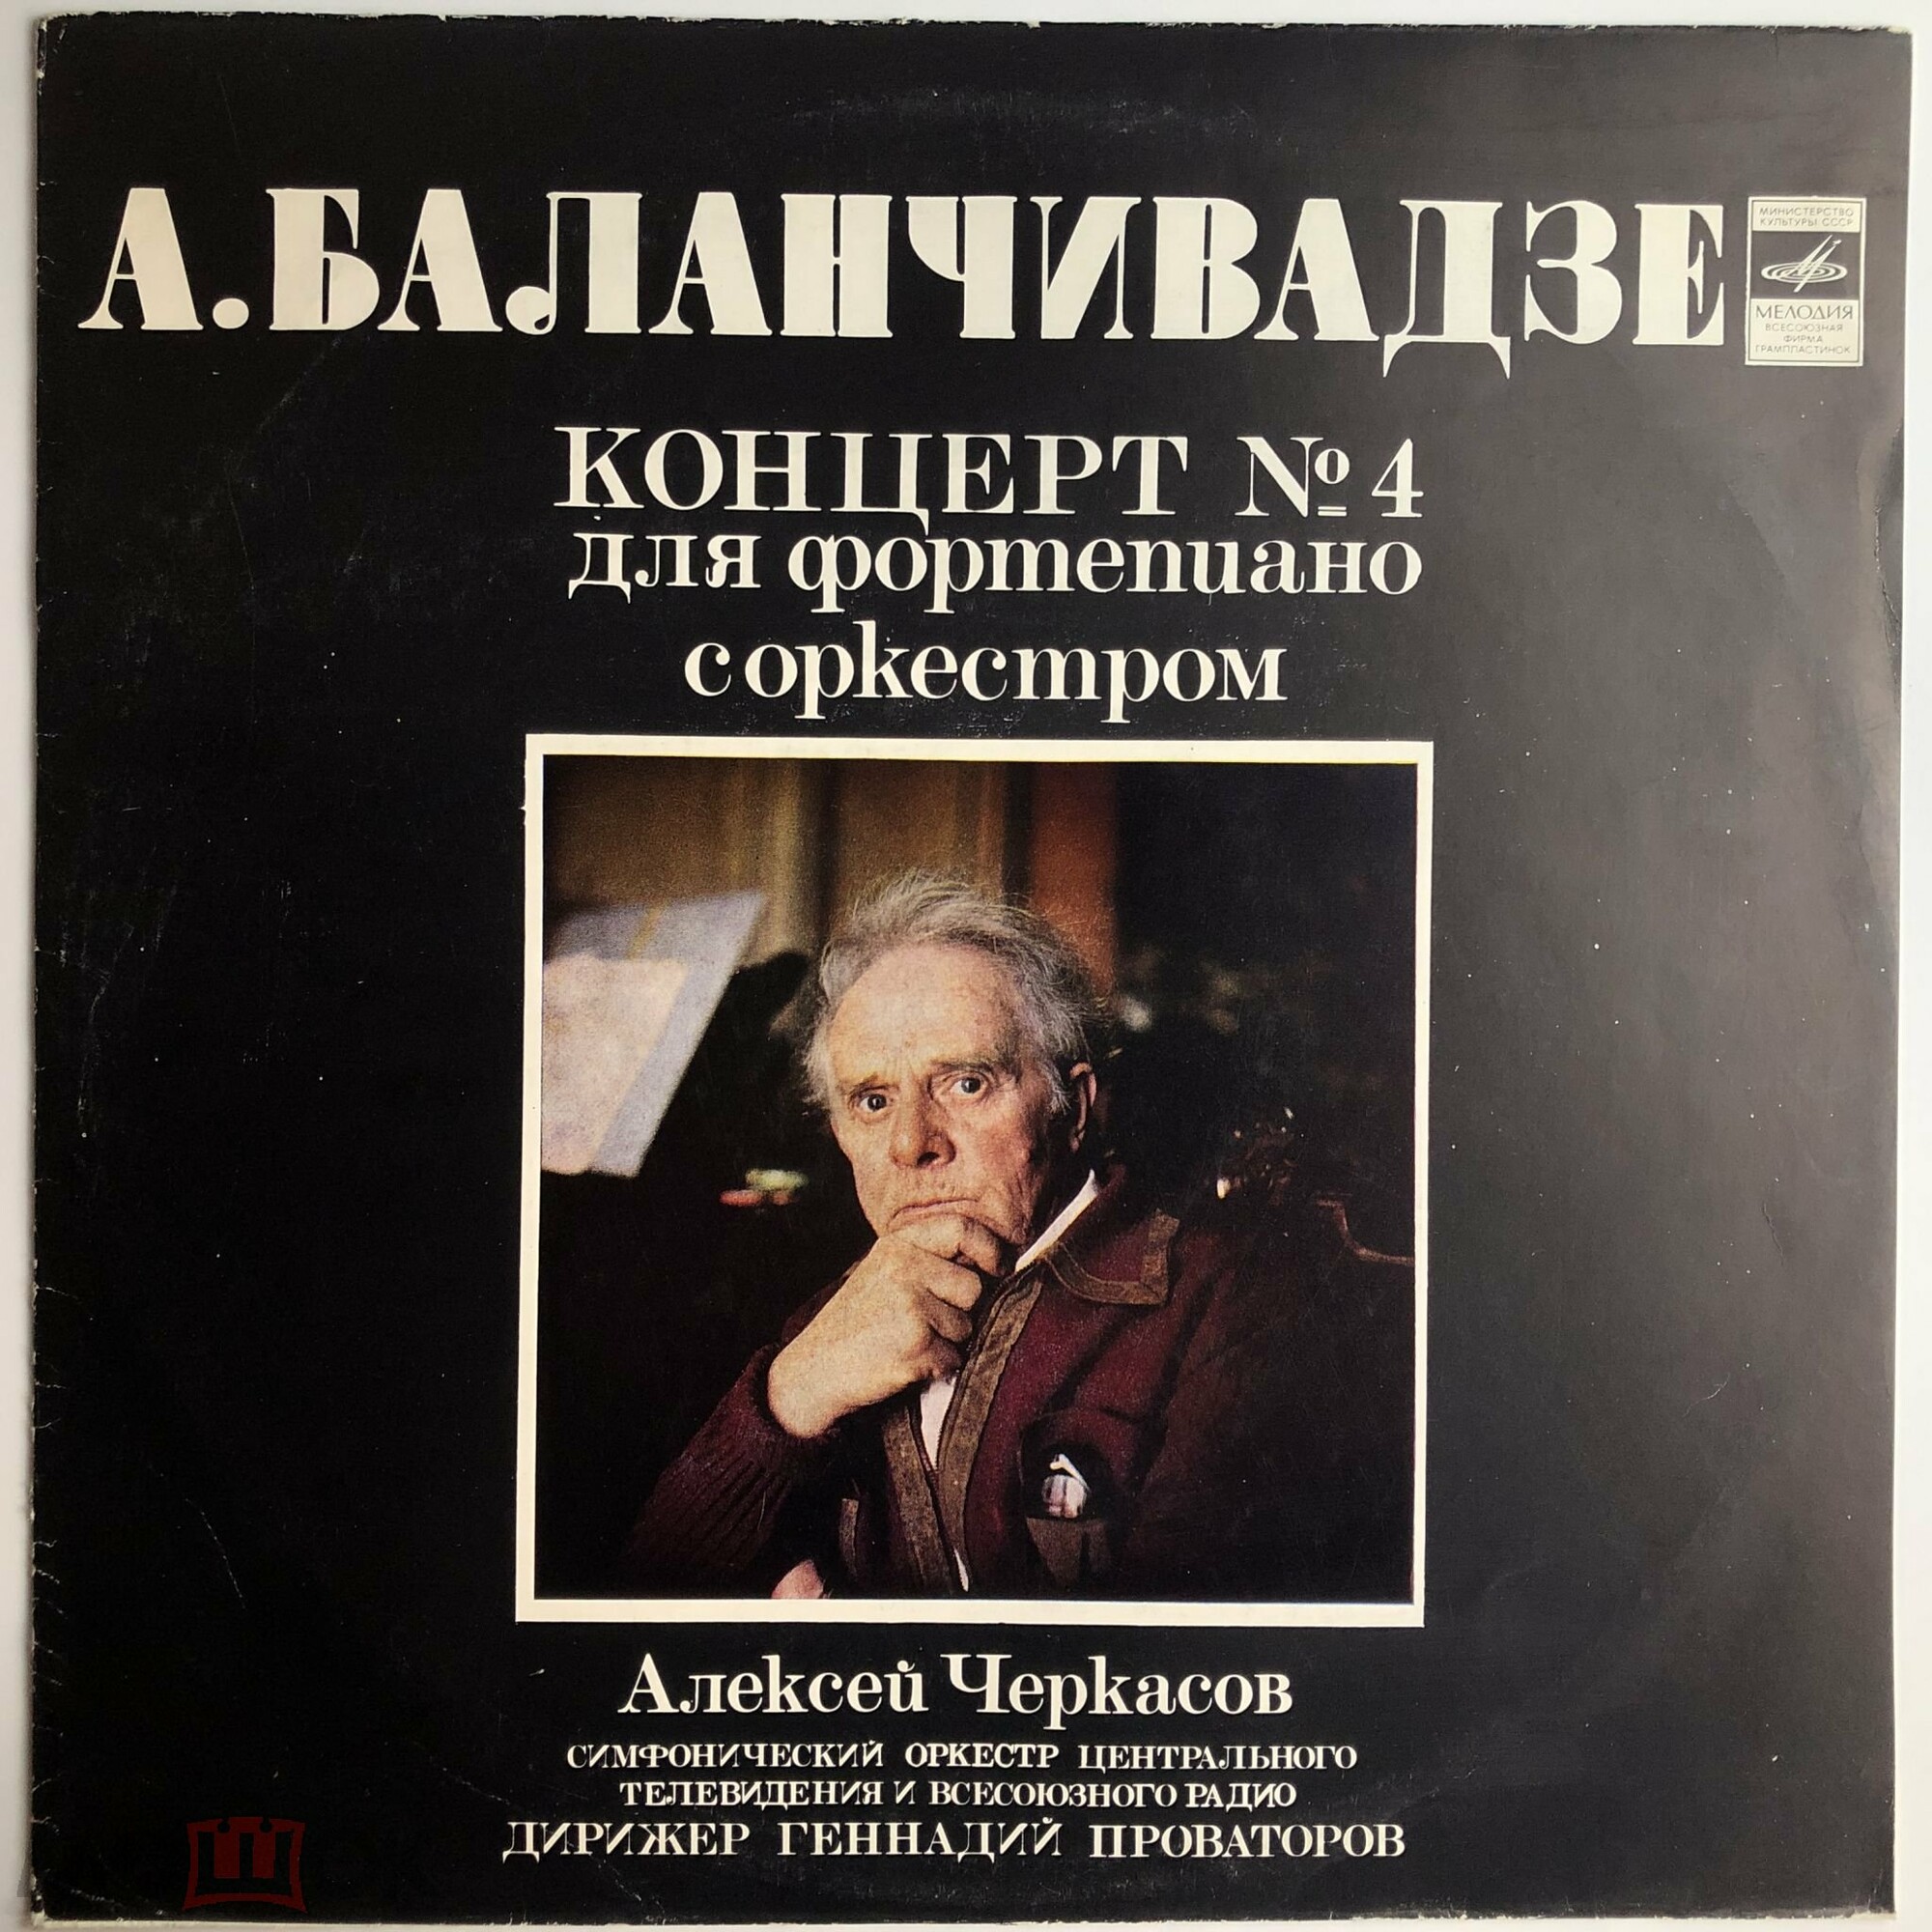 A. БАЛАНЧИВАДЗЕ (1906): Концерт № 4 для ф-но с оркестром (А. Черкасов)